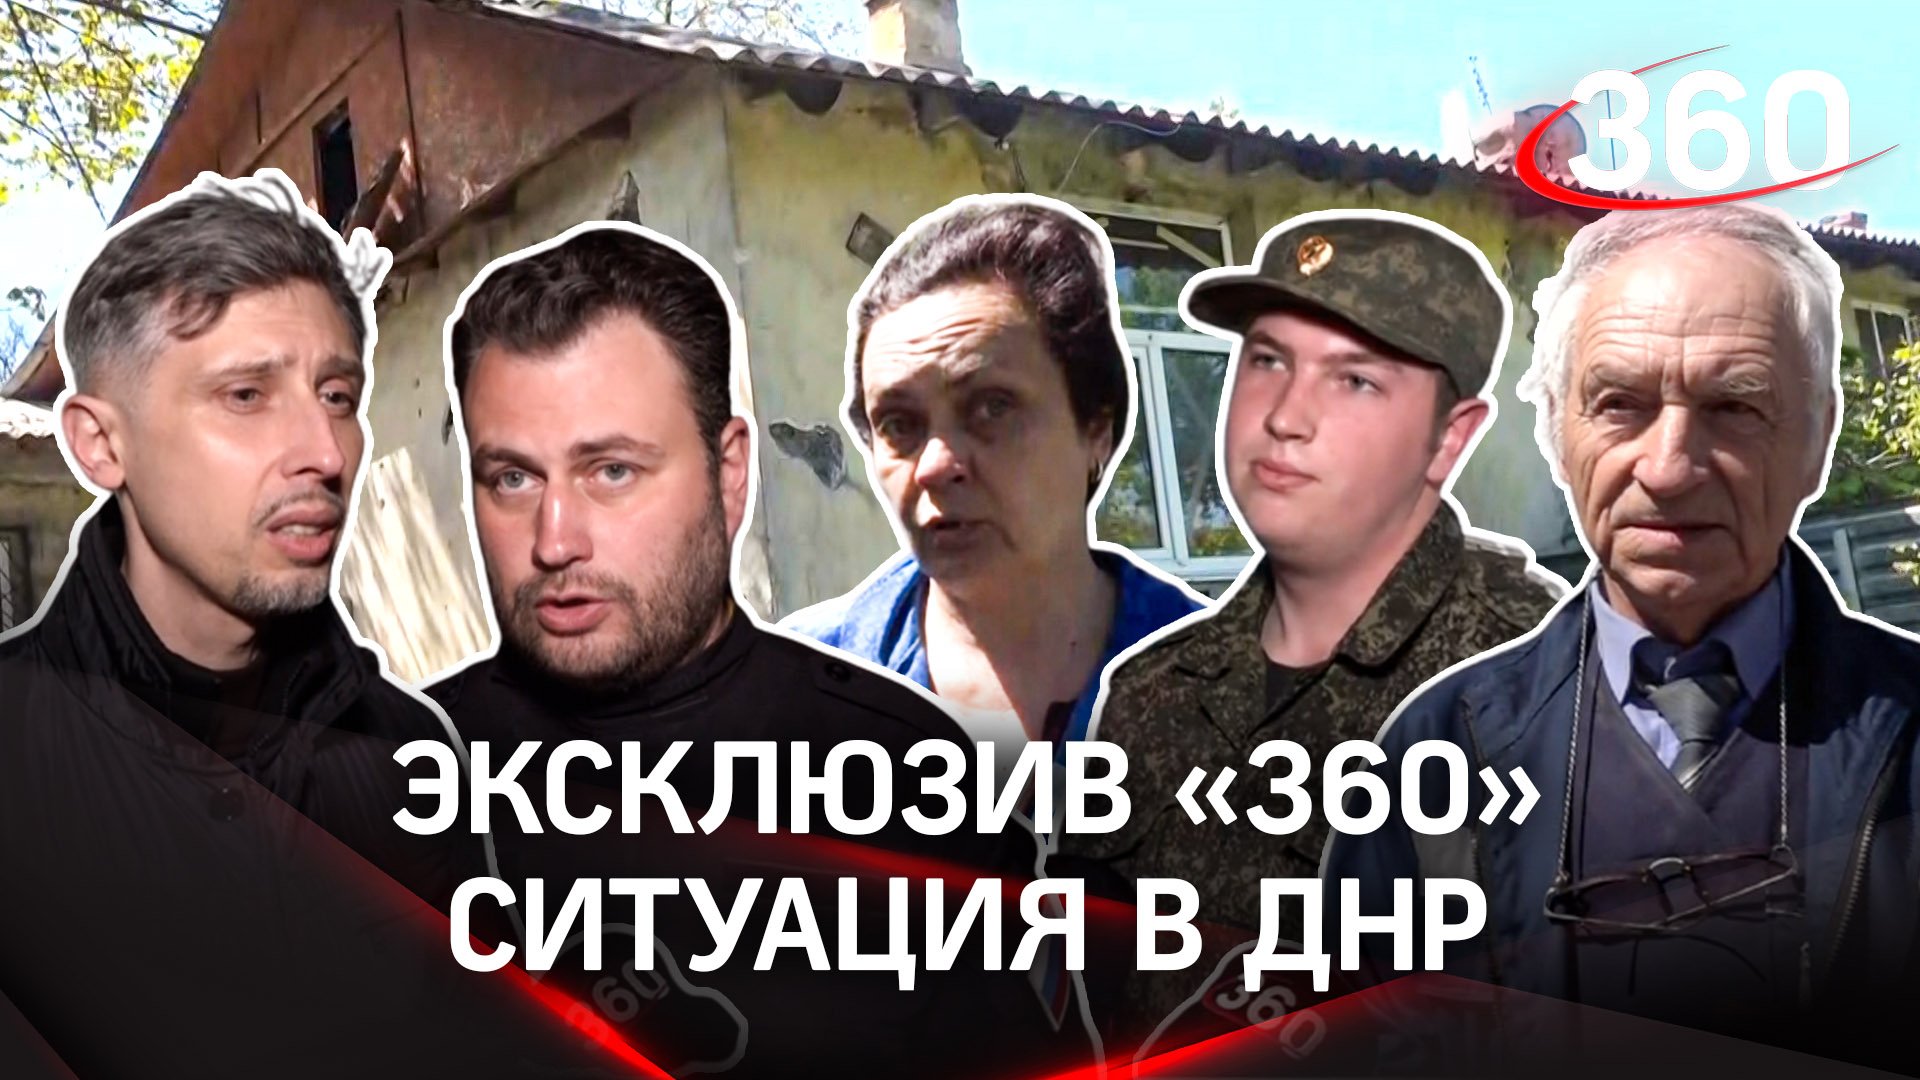 Инсульты из-за обстрелов: ситуация в ДНР, здравоохранение, гумпомощь